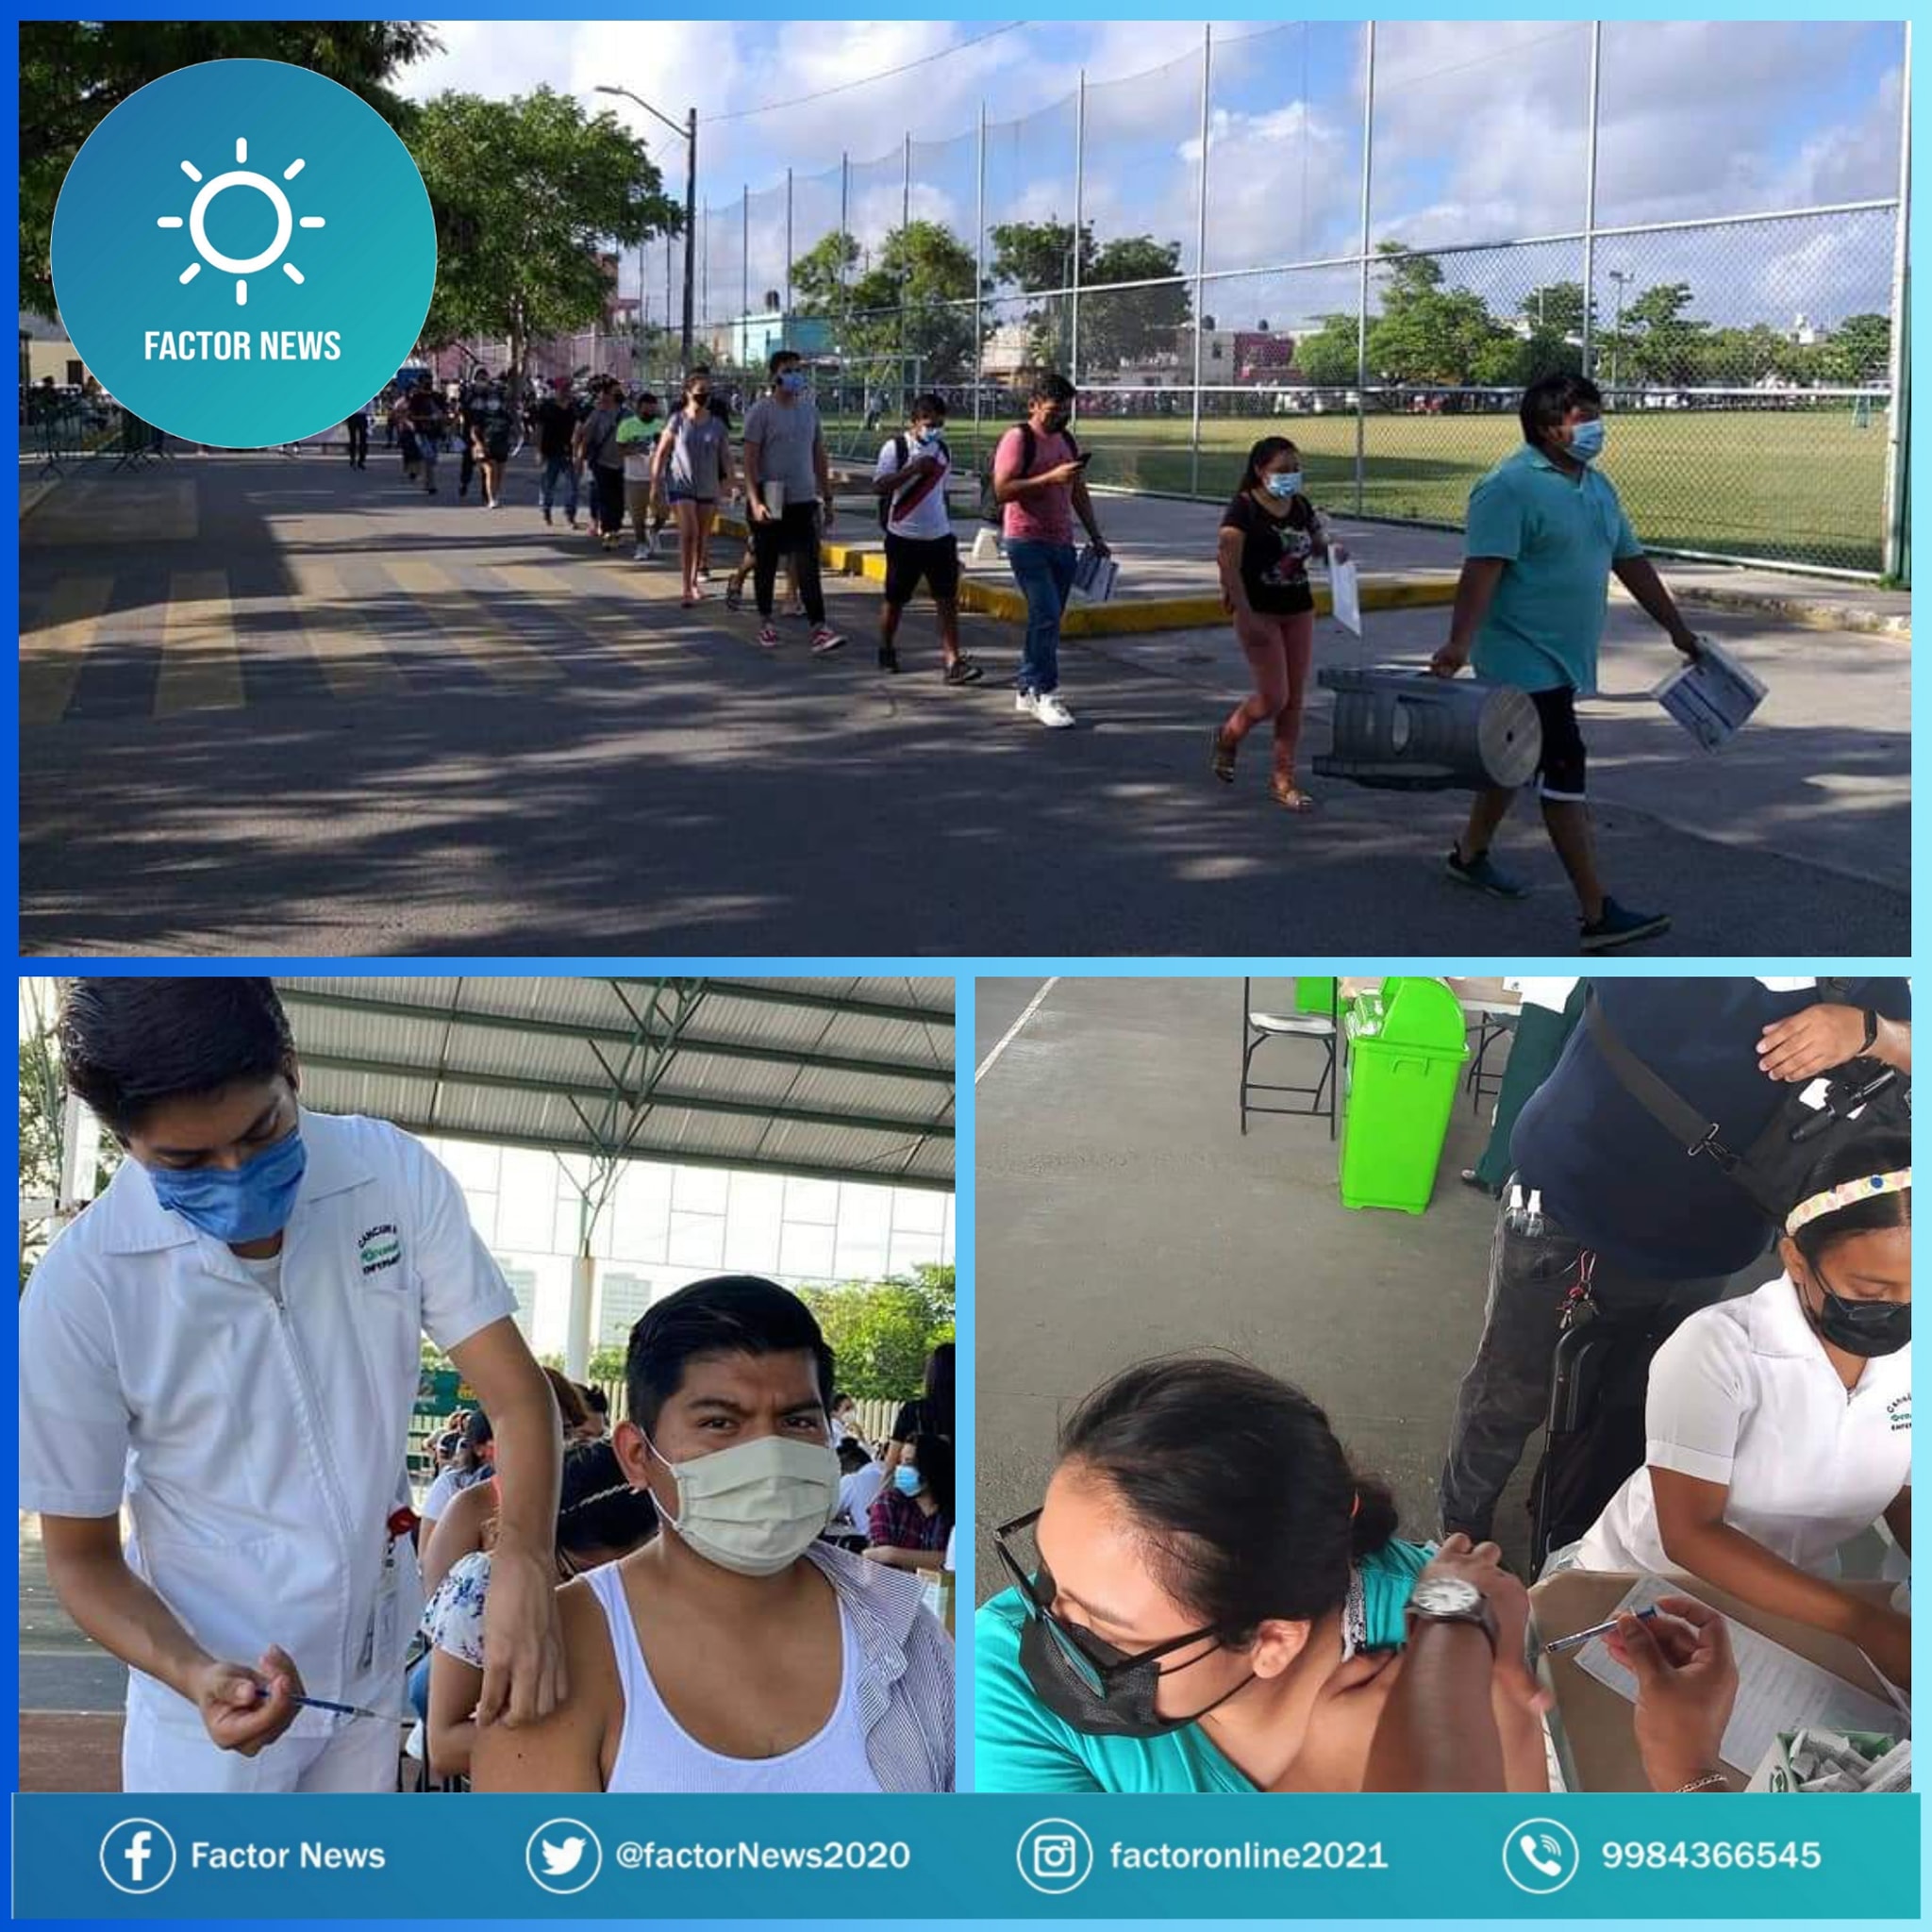 En Cancún inició la jornada de vacunación para jóvenes de 18 a 29 años contra COVID-19.